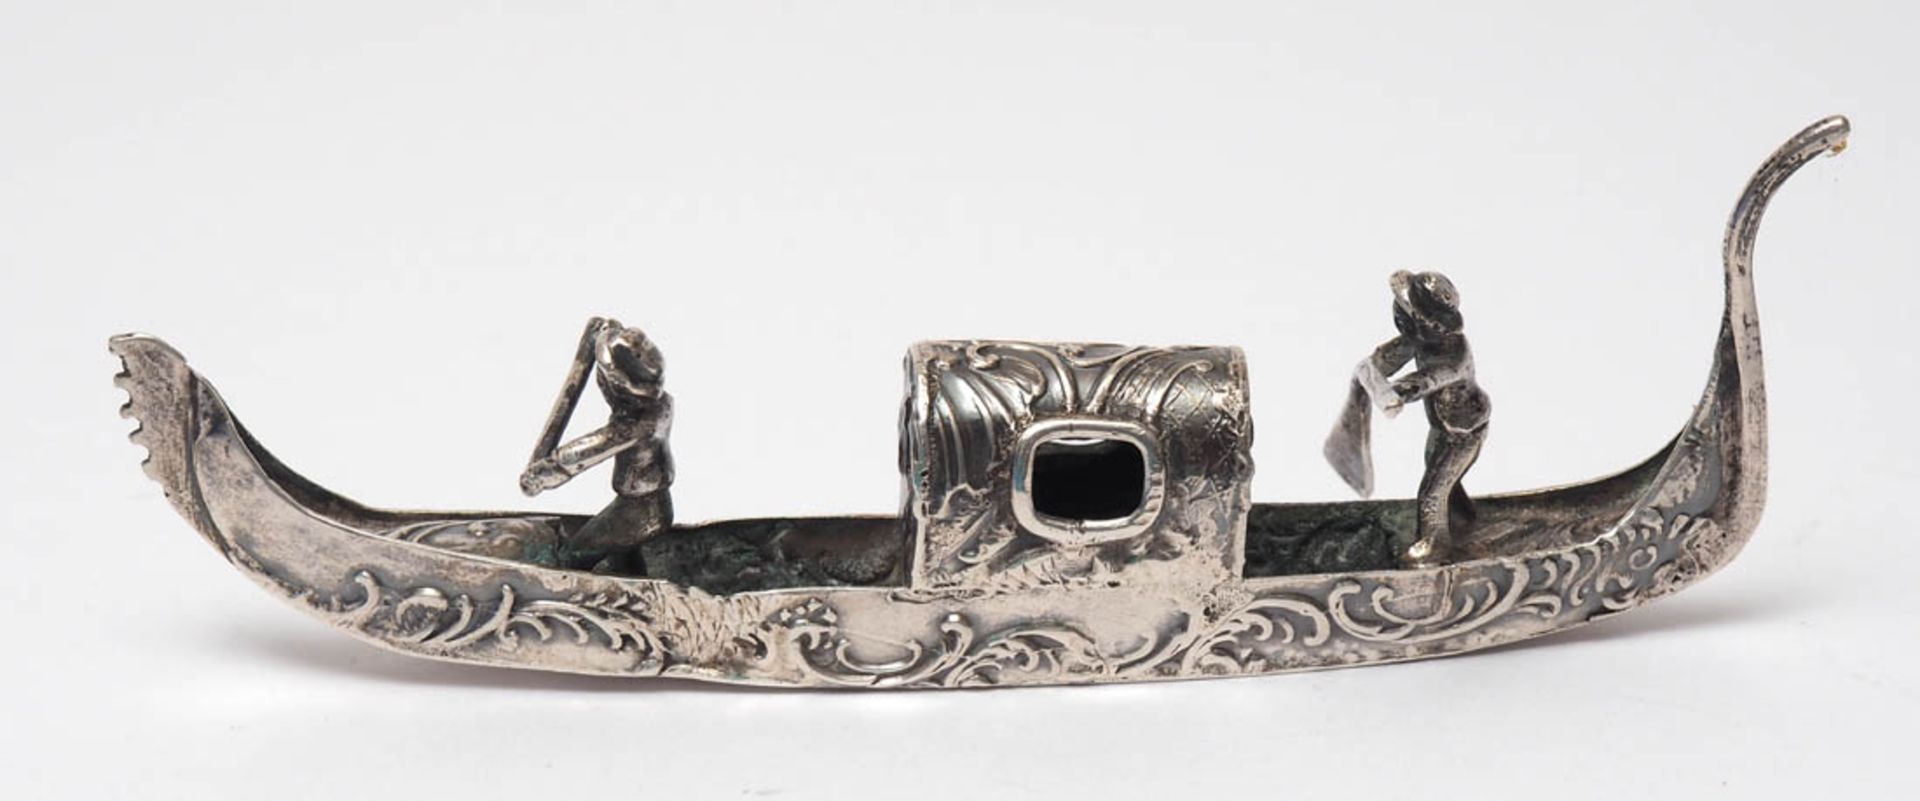 Zierobjekt Silber 800. In Form einer venezianischen Gondel. L.11cm, Gew. ca. 26g. Handarbeit. - Bild 2 aus 4